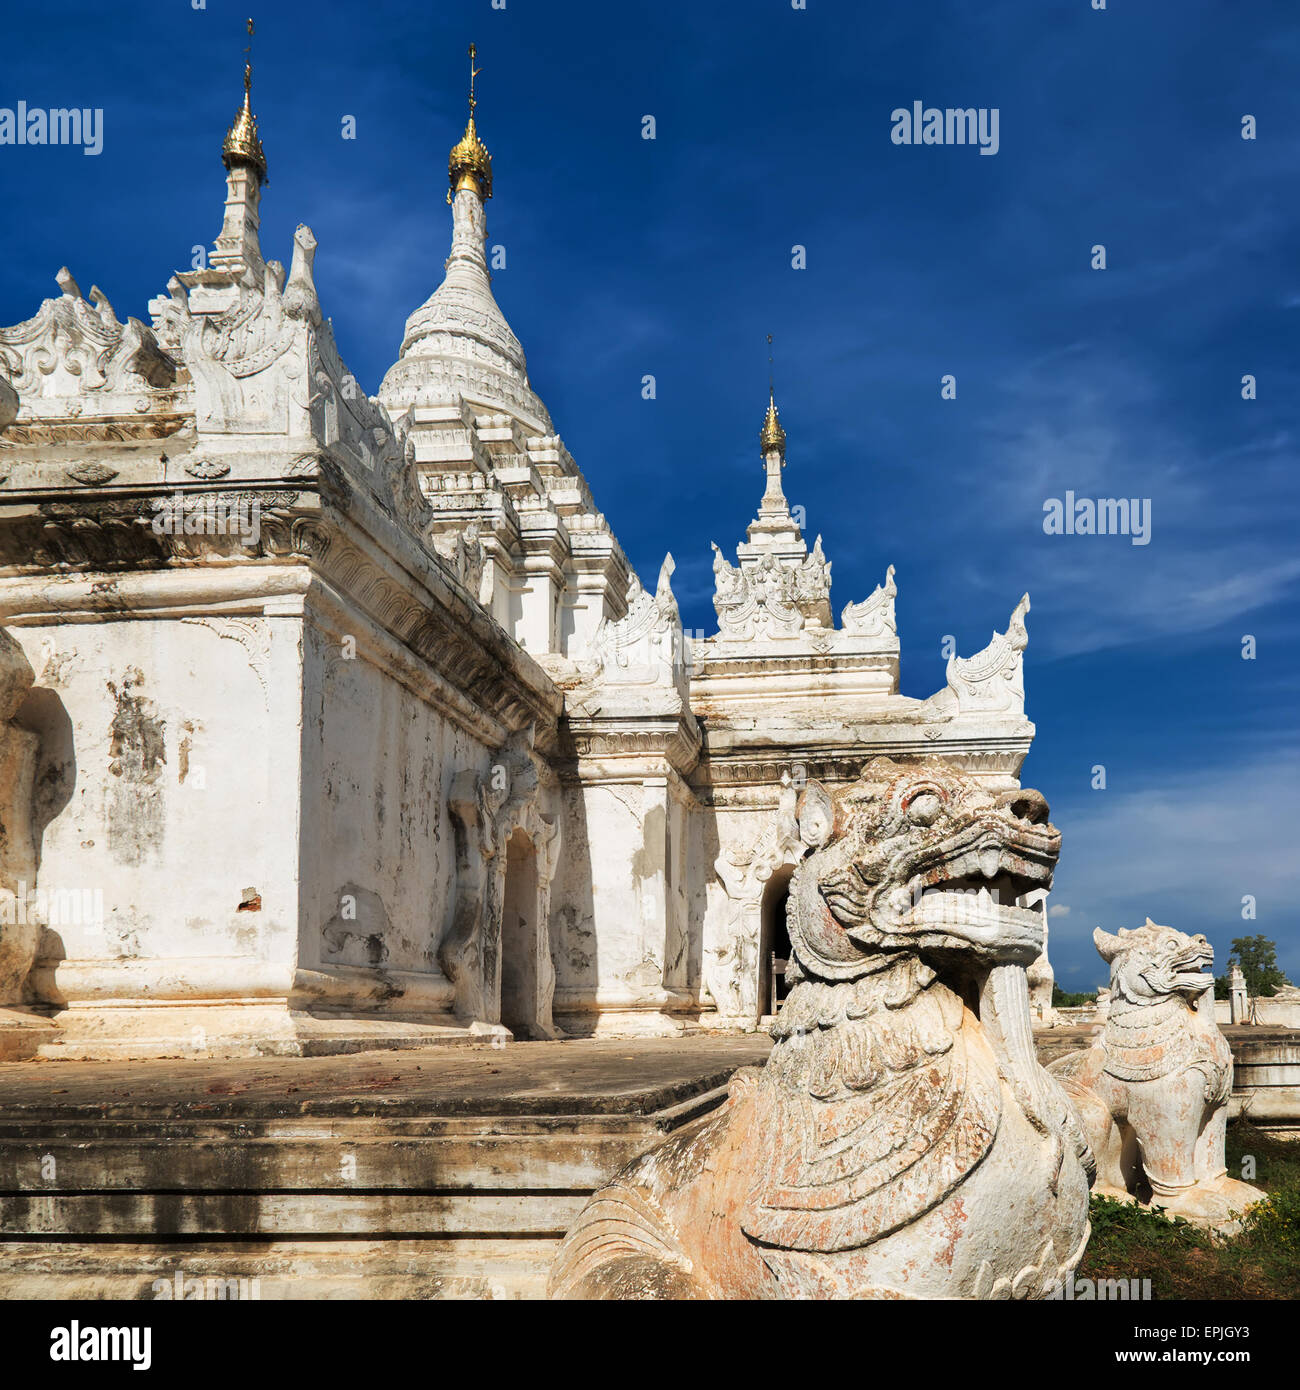 Weiße Pagode am Inwa alte Stadt mit Löwen-Wächter-Statuen. Beeindruckende Architektur der alten buddhistischen Tempel. Myanmar (Burma) tra Stockfoto